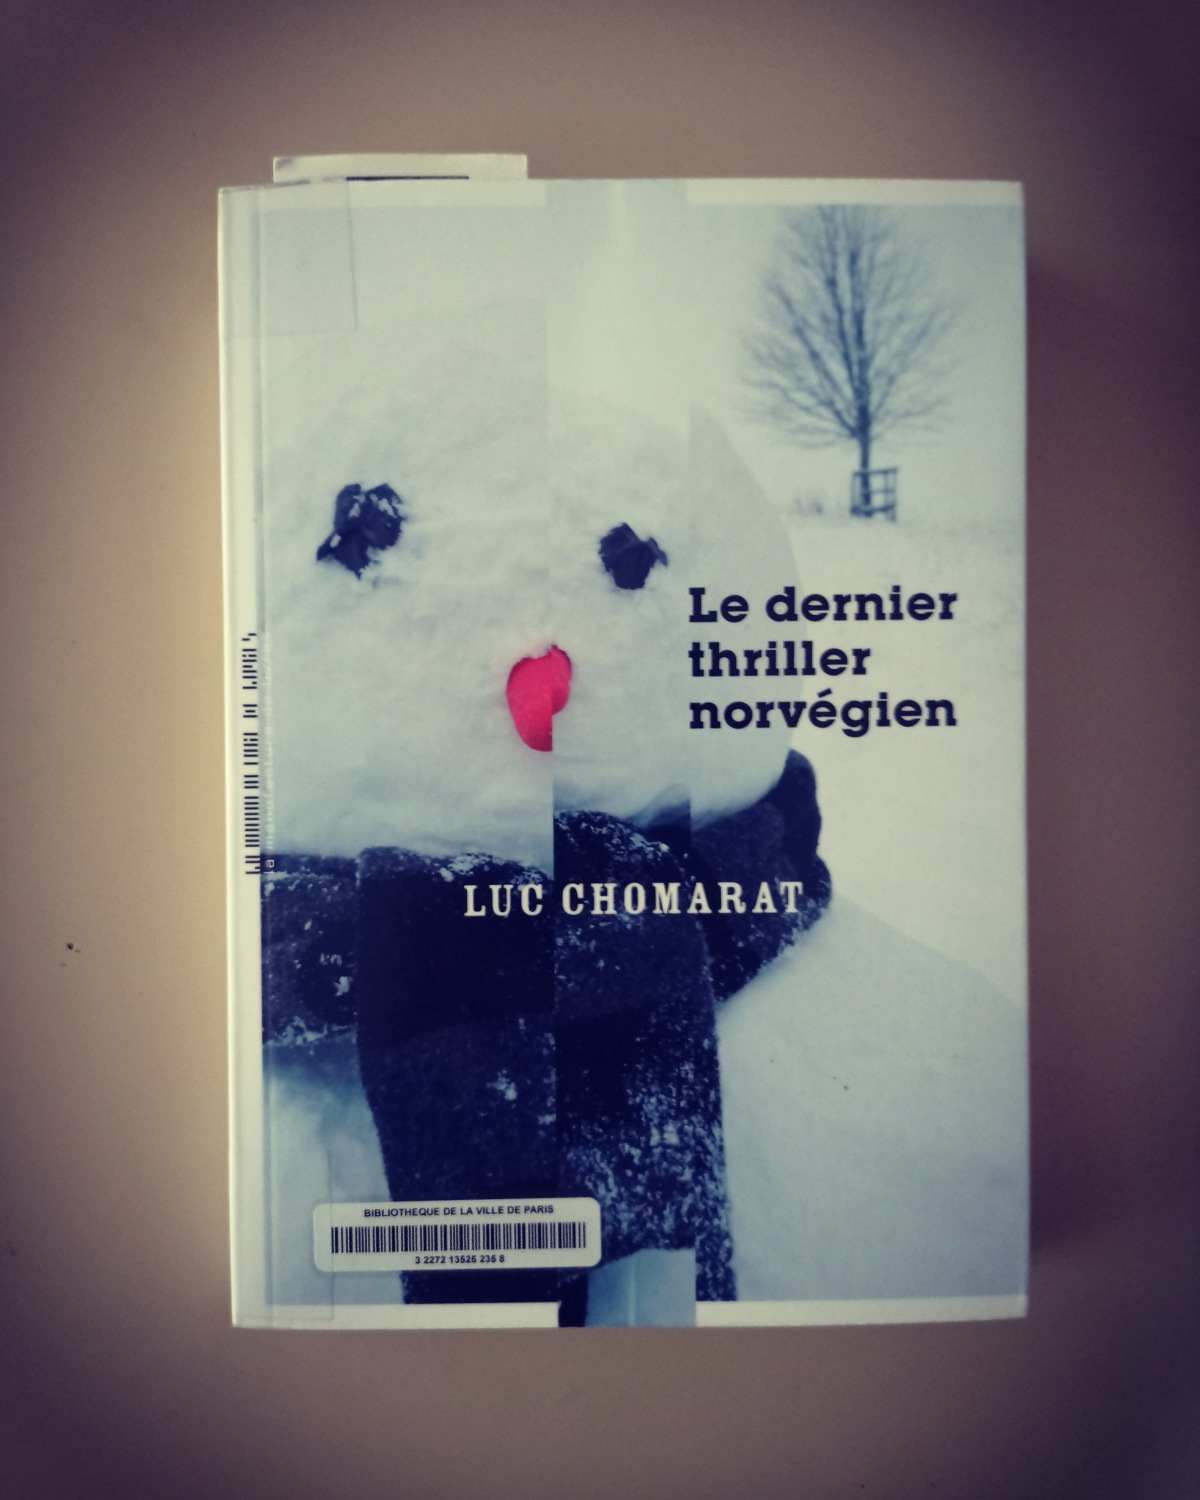 Le dernier thriller norvégien / Luc Chomarat